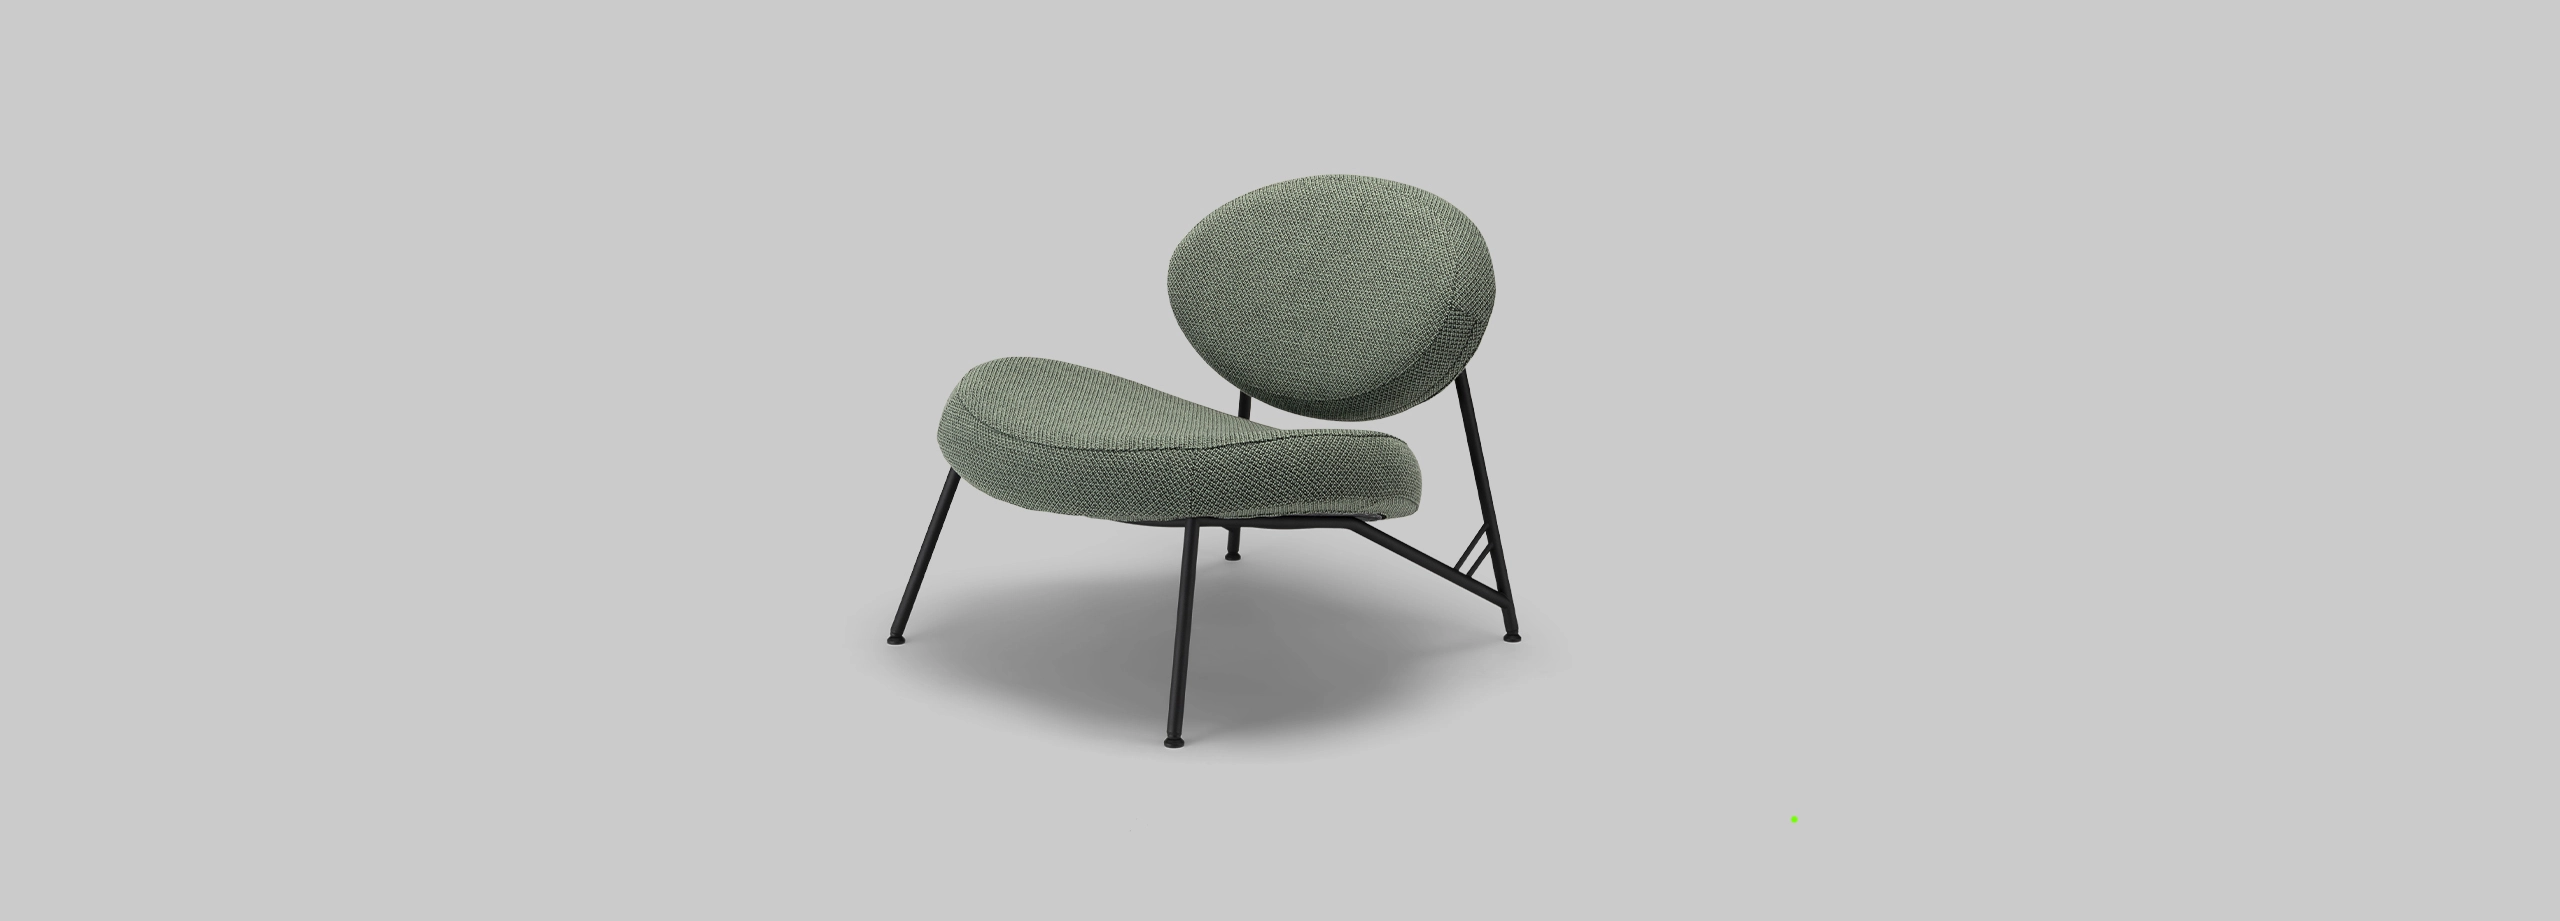 Harvink fauteuil Tipi in stof Cleo groen met frame RAL 6009 dennen groen fijnstructuur